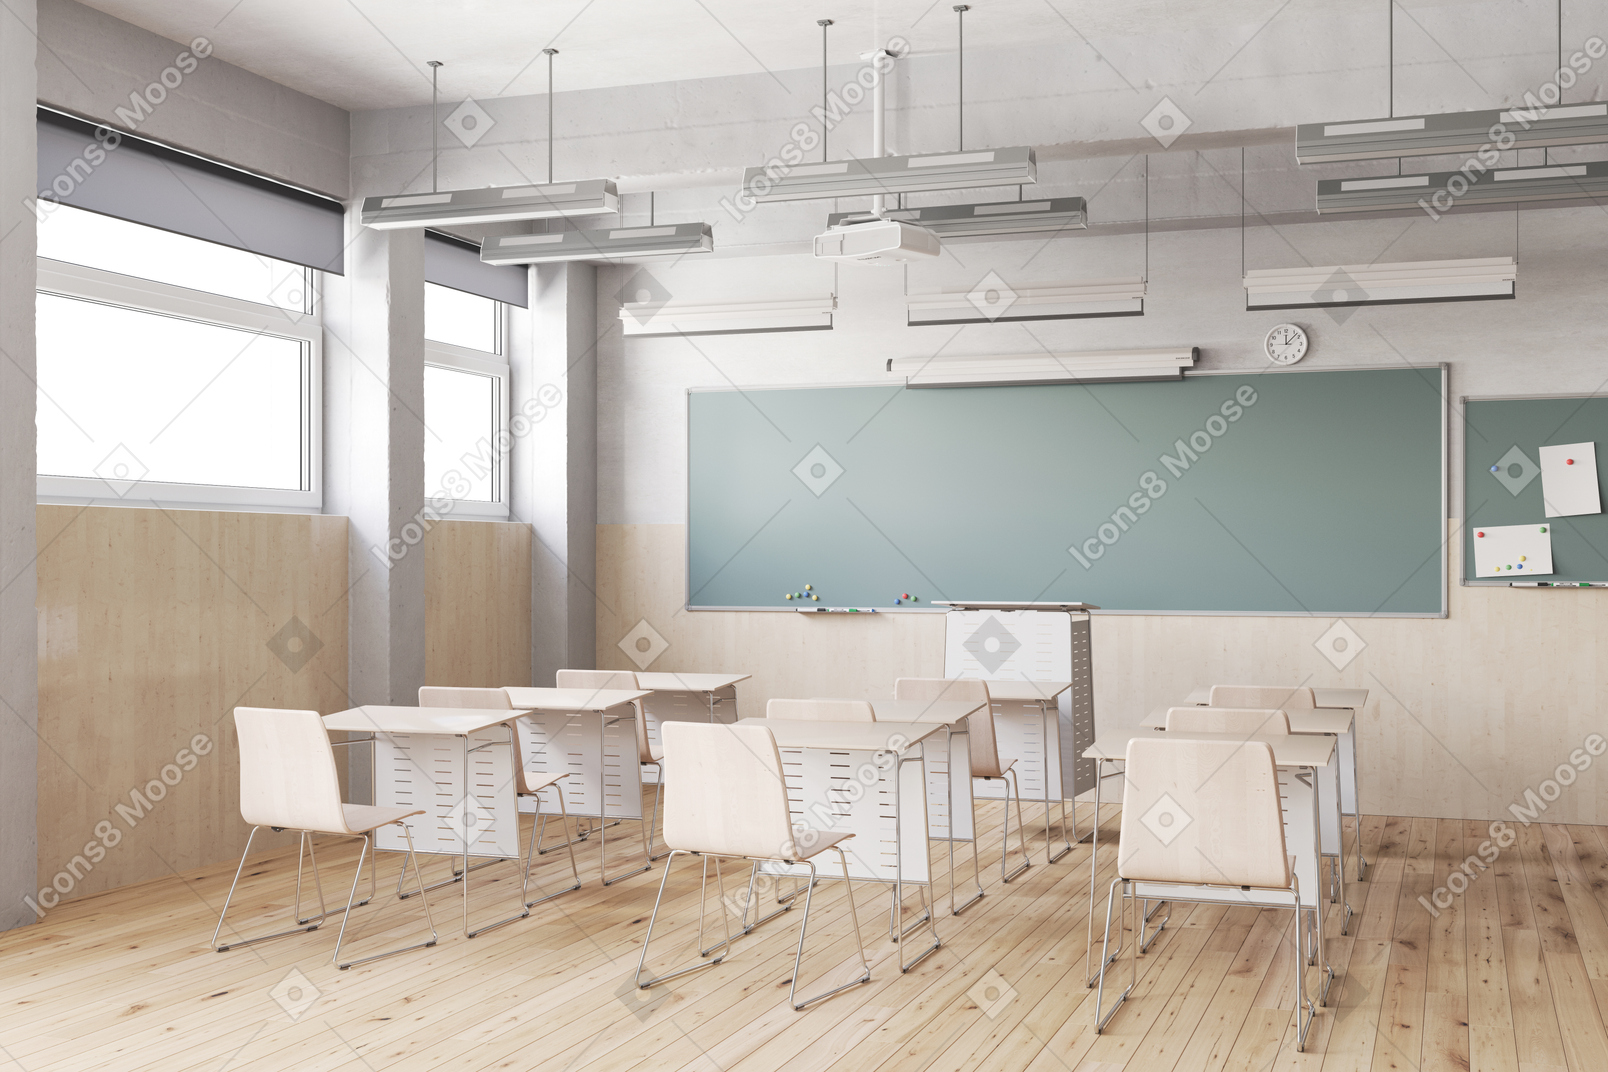 Modern classroom design